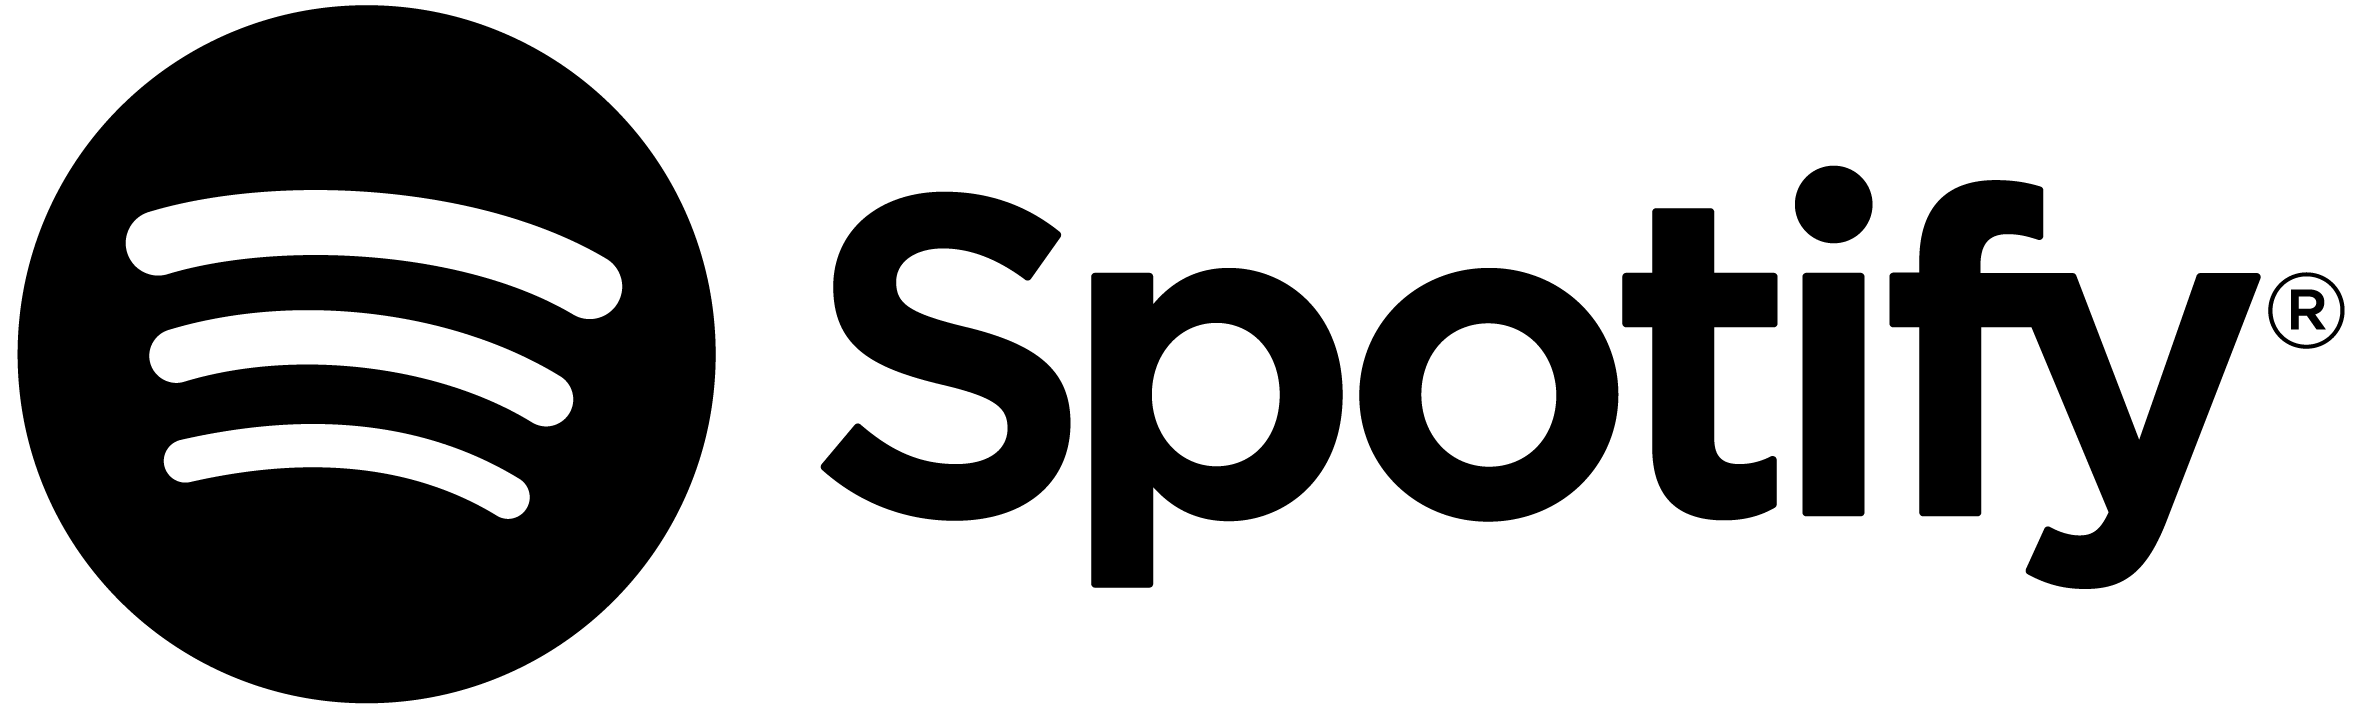 Spotify logo cmyk black